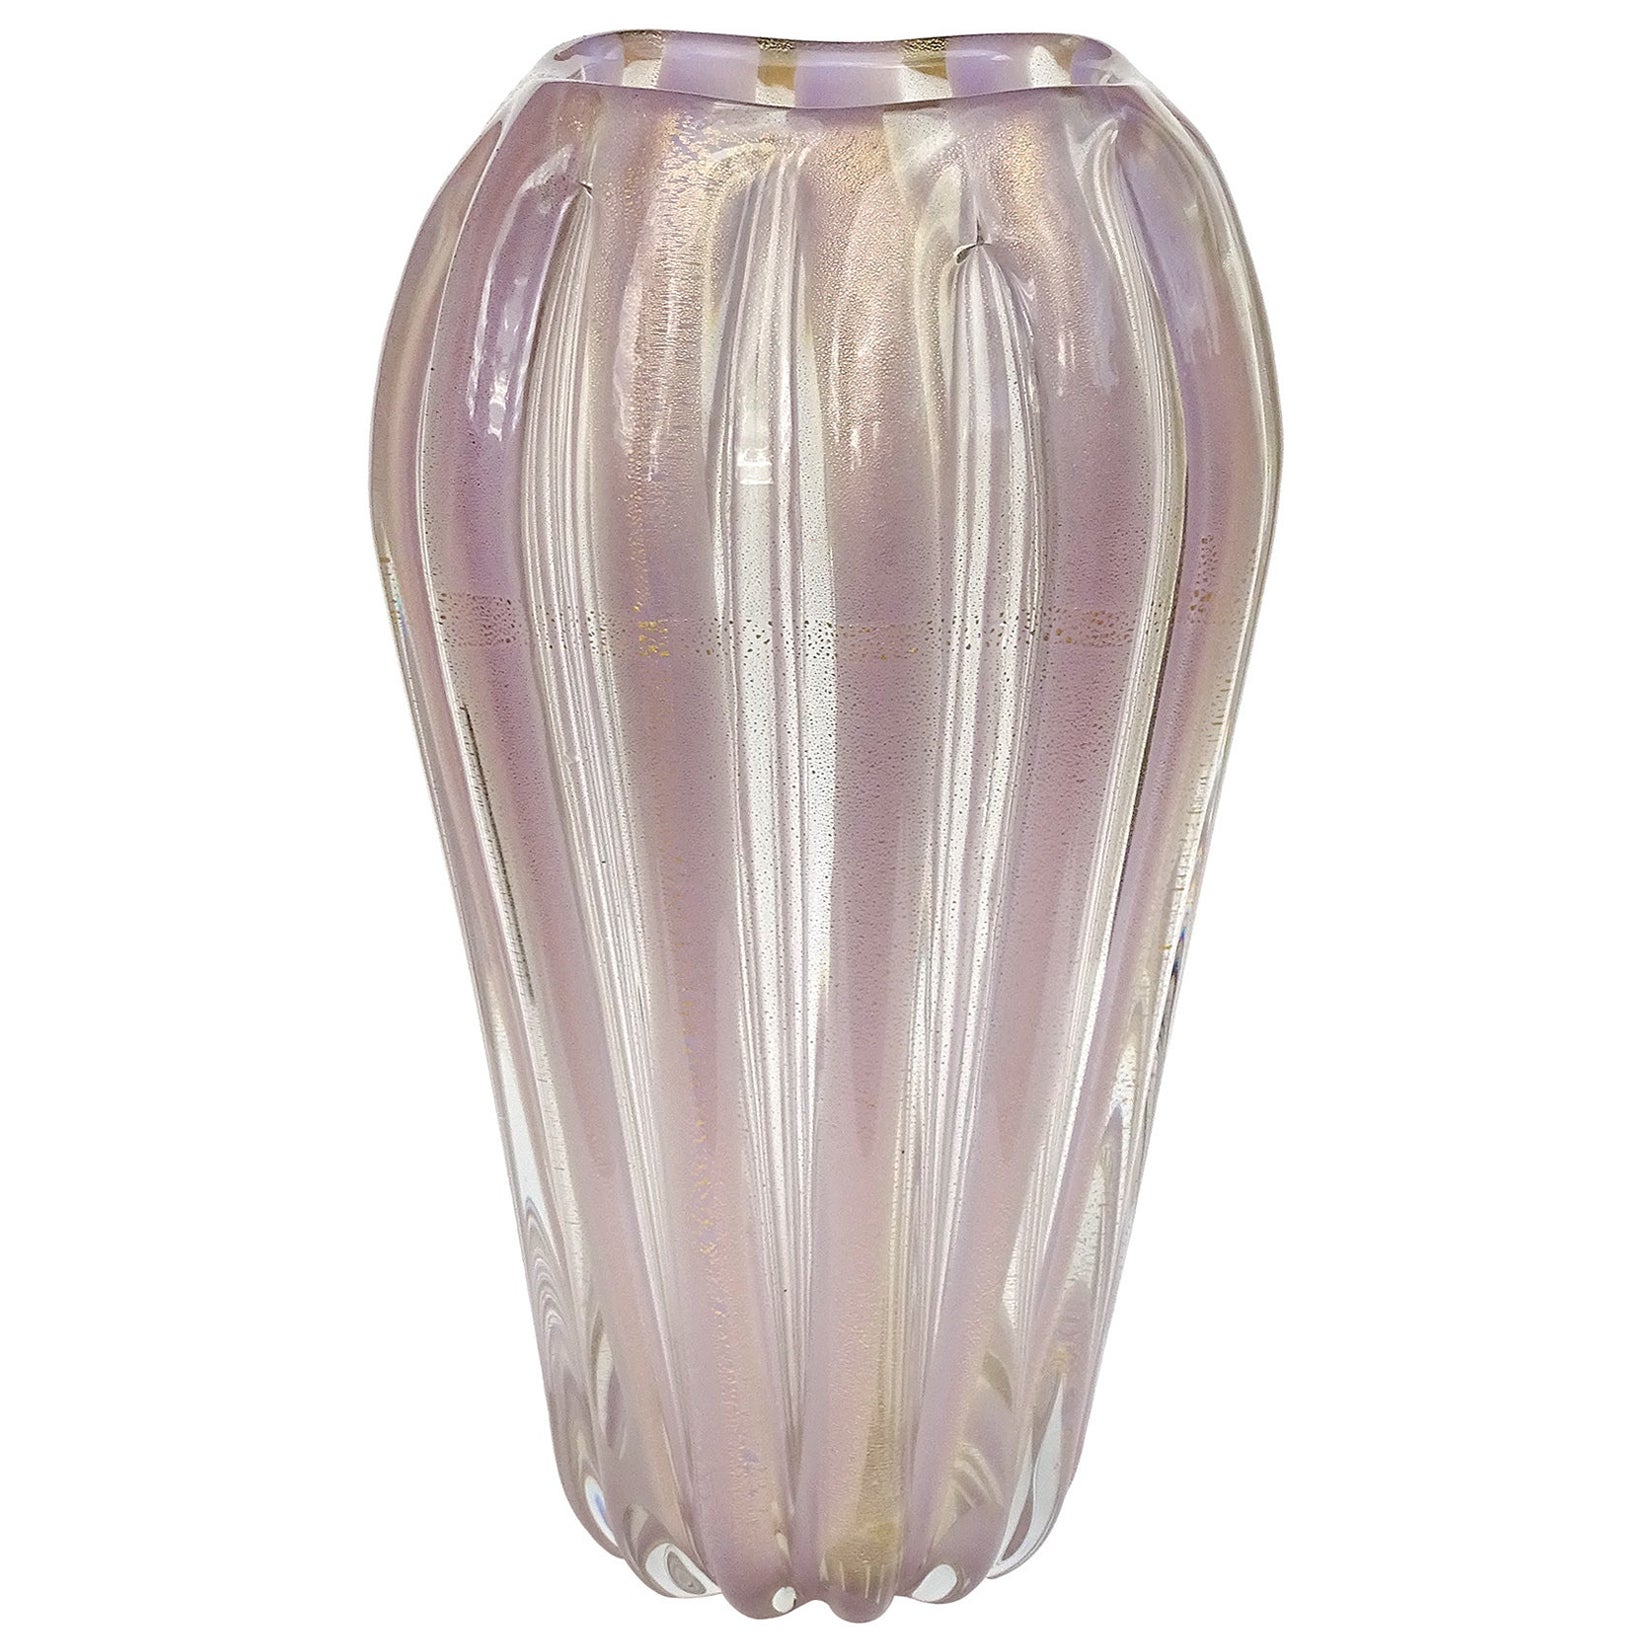 Murano Lavender Stripes Gold Flecks Italian Art Glass Midcentury Flower Vase